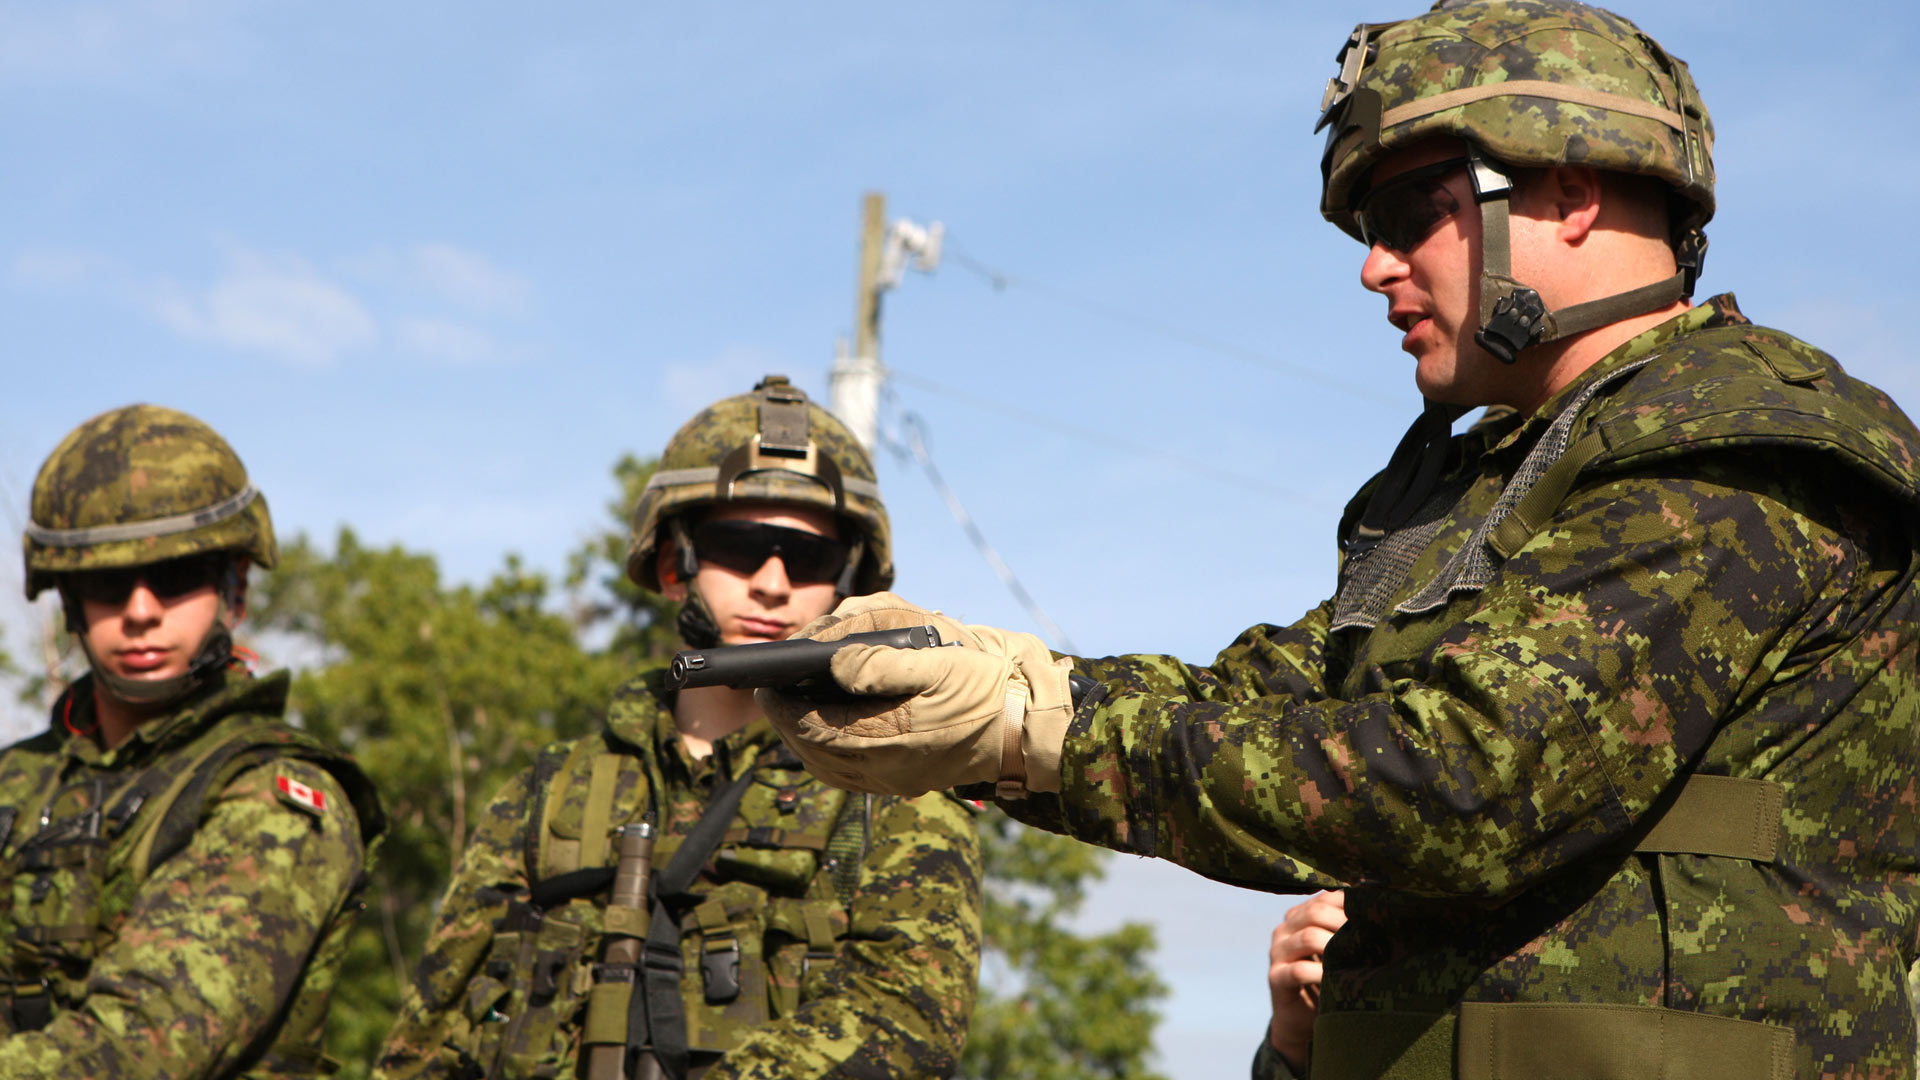 El joven se enlistó en un centro de reclutamiento del Ejército canadiense para atacar a militares